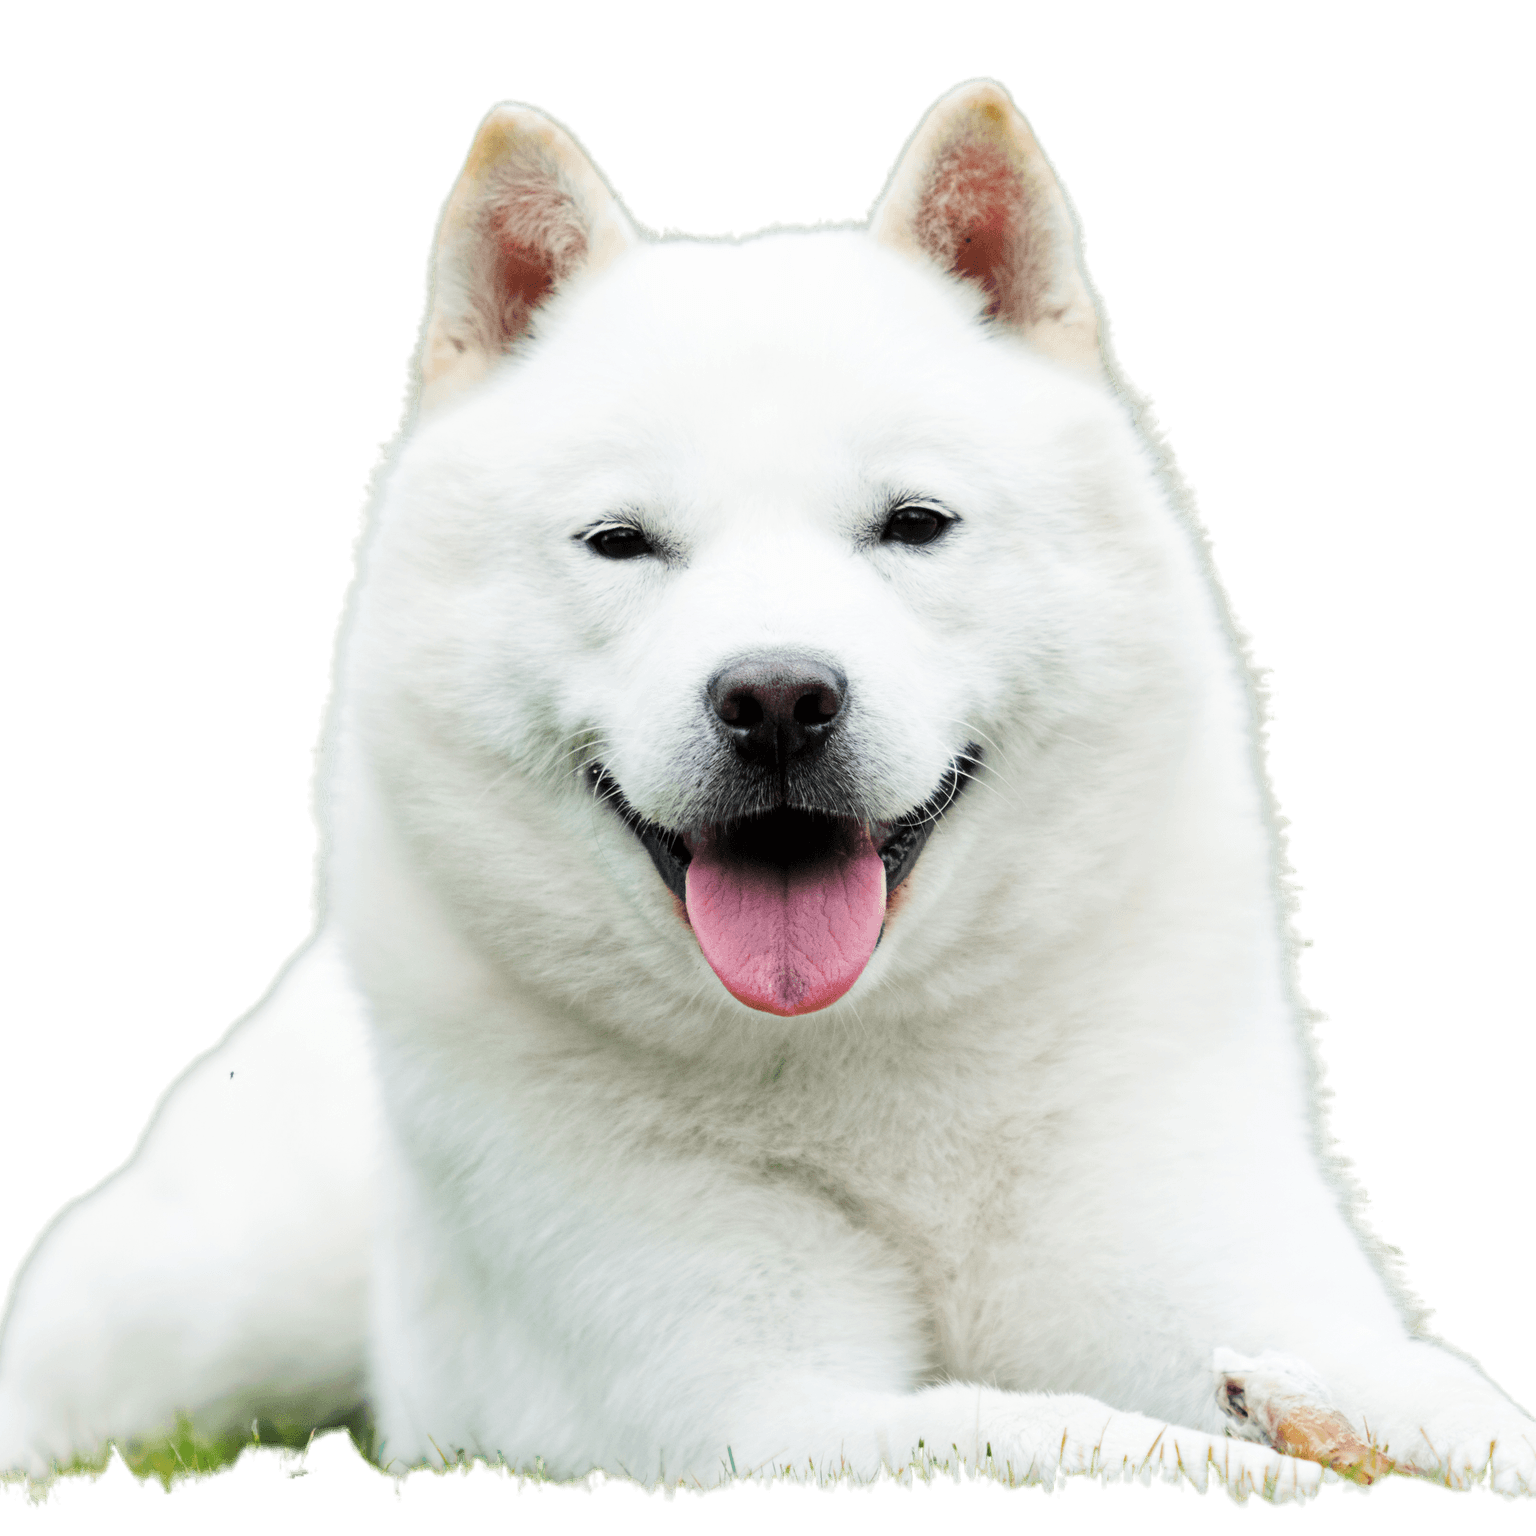 Le chien japonais d'Hokkaido sourit avec sa langue